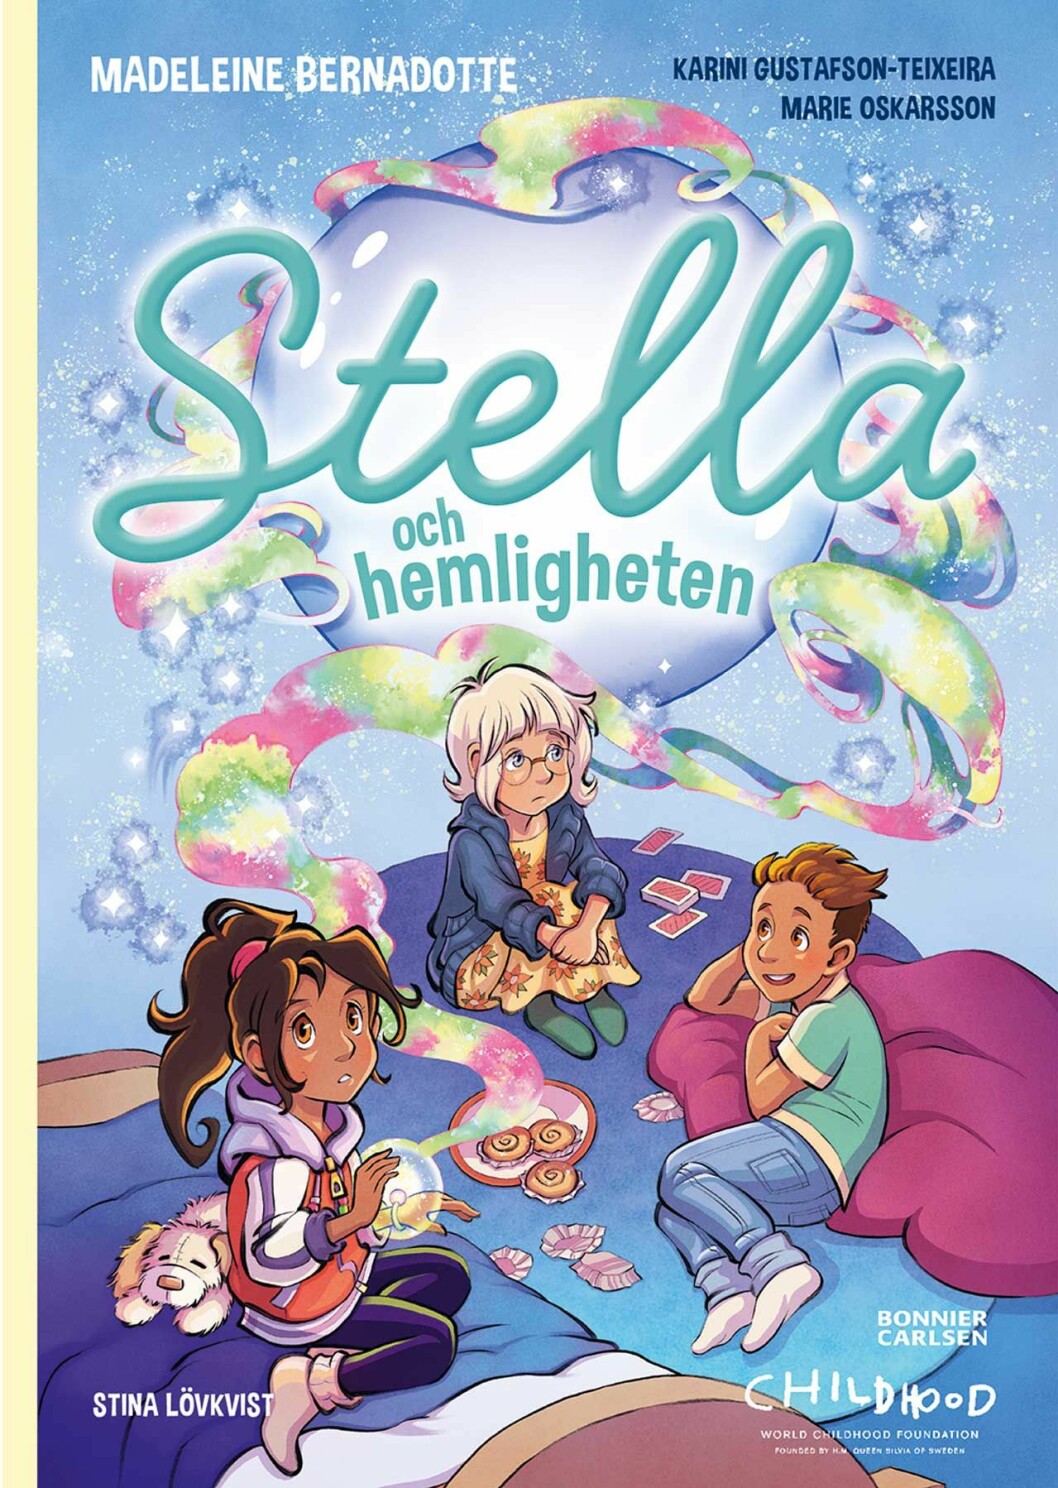 Omslaget till prinsessan Madeleines bok Stella och hemligheten. 